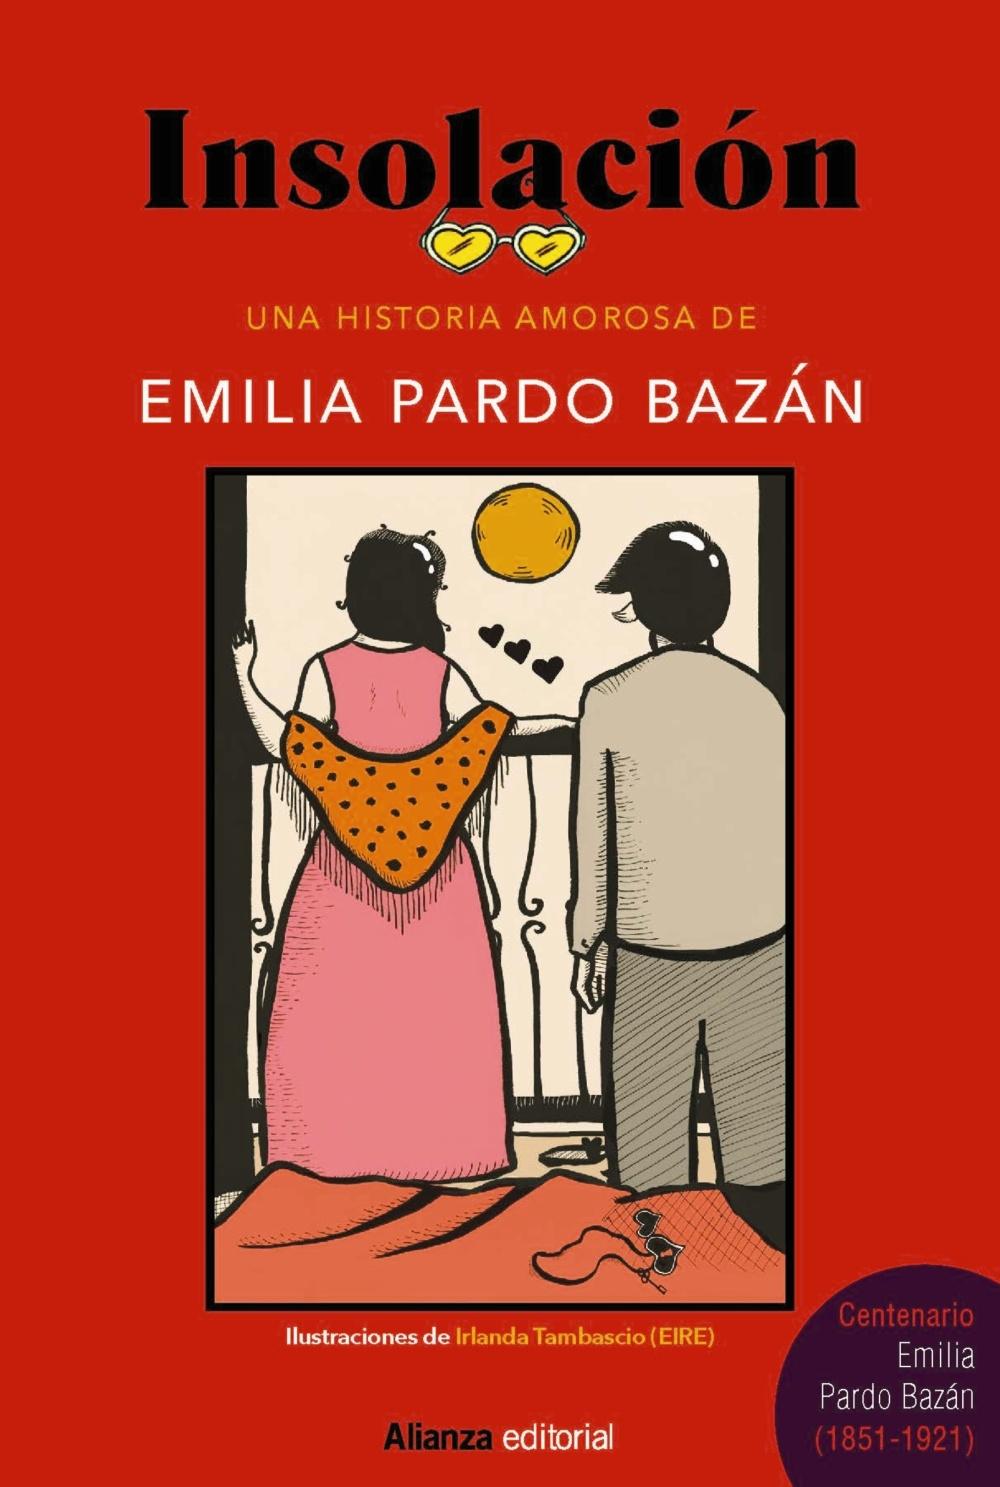 Insolación "Una historia amorosa (Edición ilustrada)"